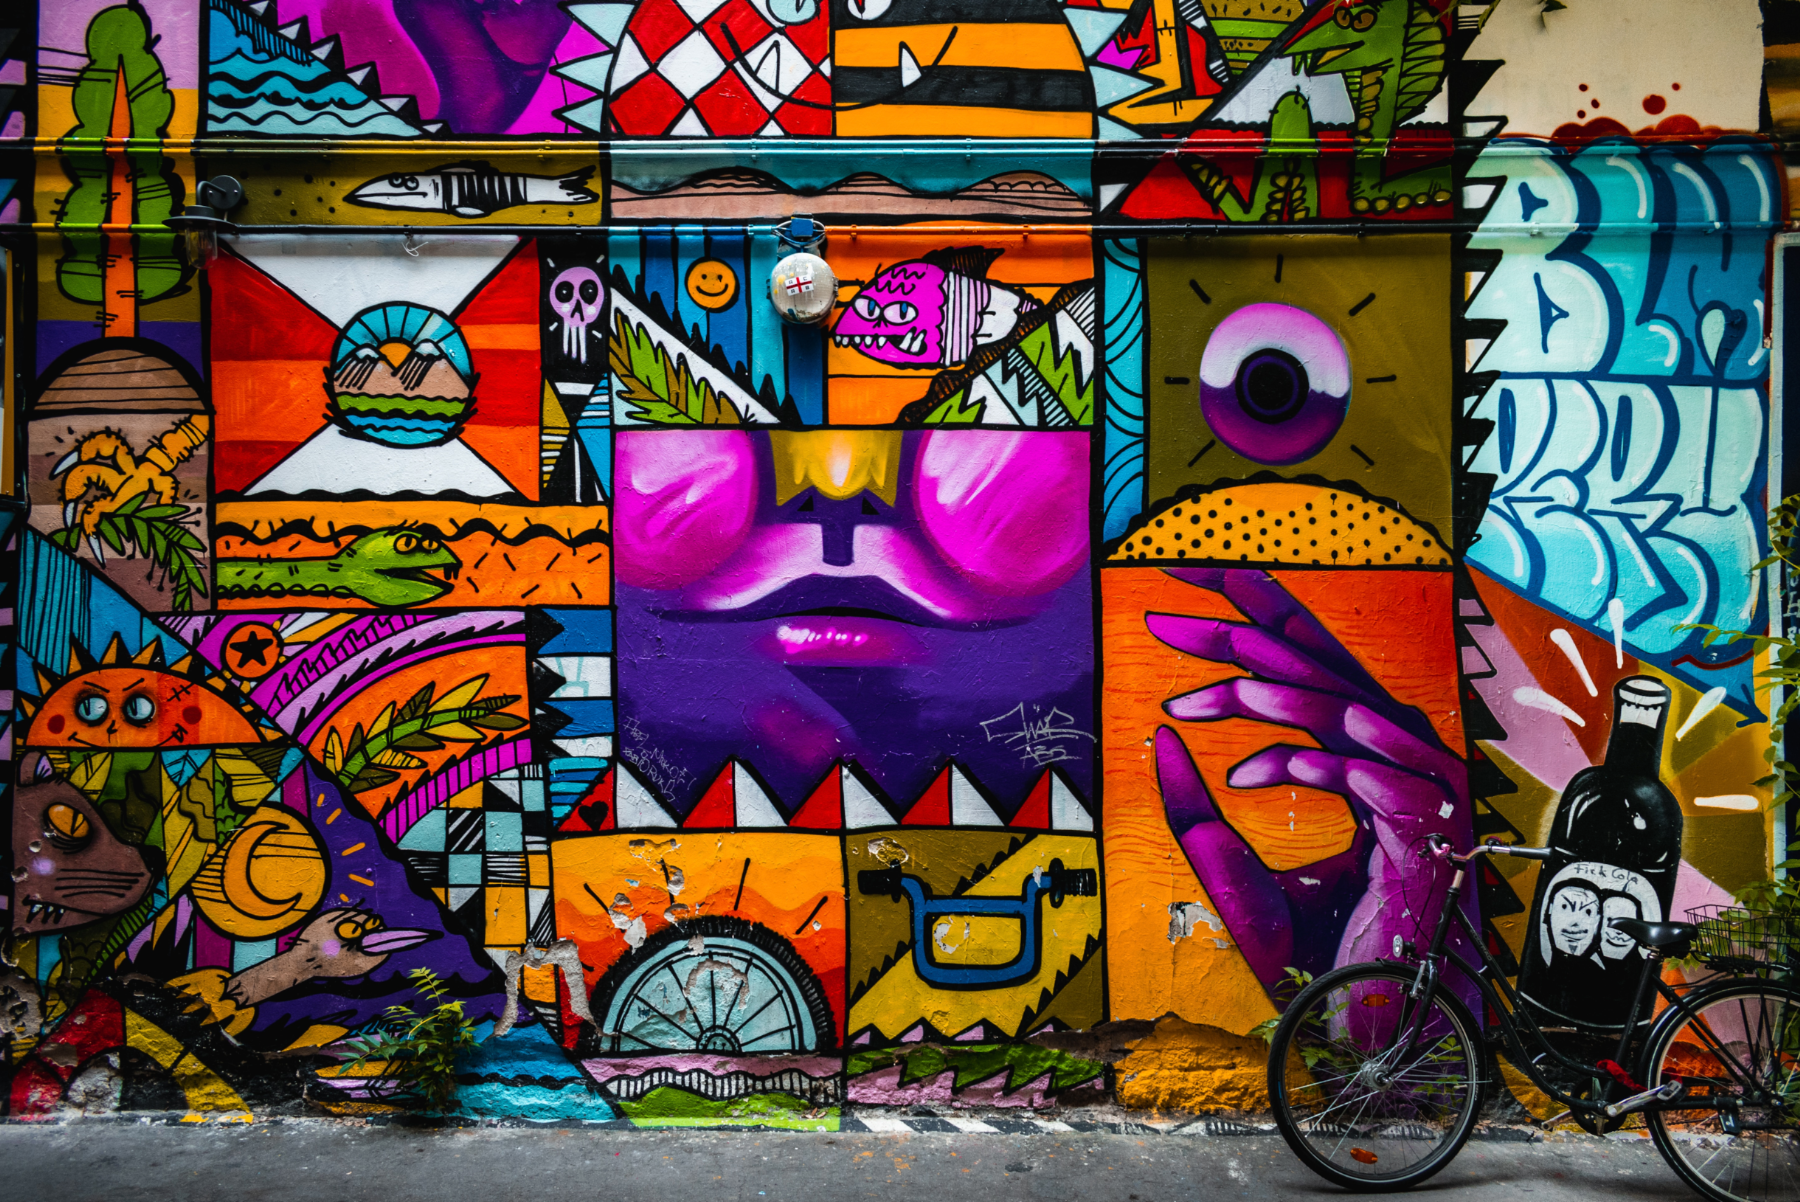 Bike parked next to street art in Berlin, Germany.